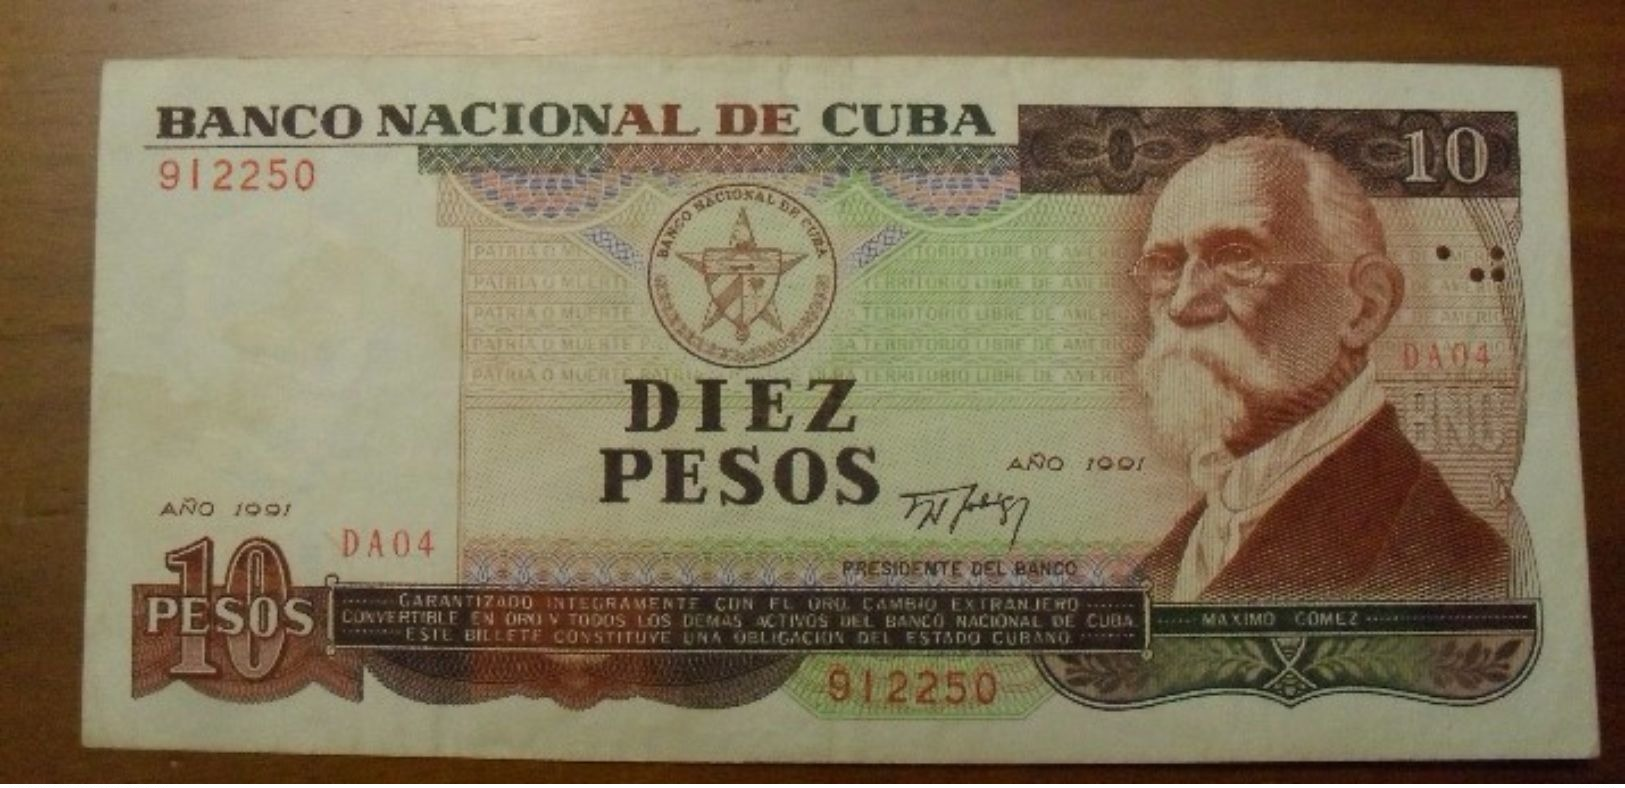 1991 - Cuba - DIEZ PESOS - DA04 912250 - Cuba